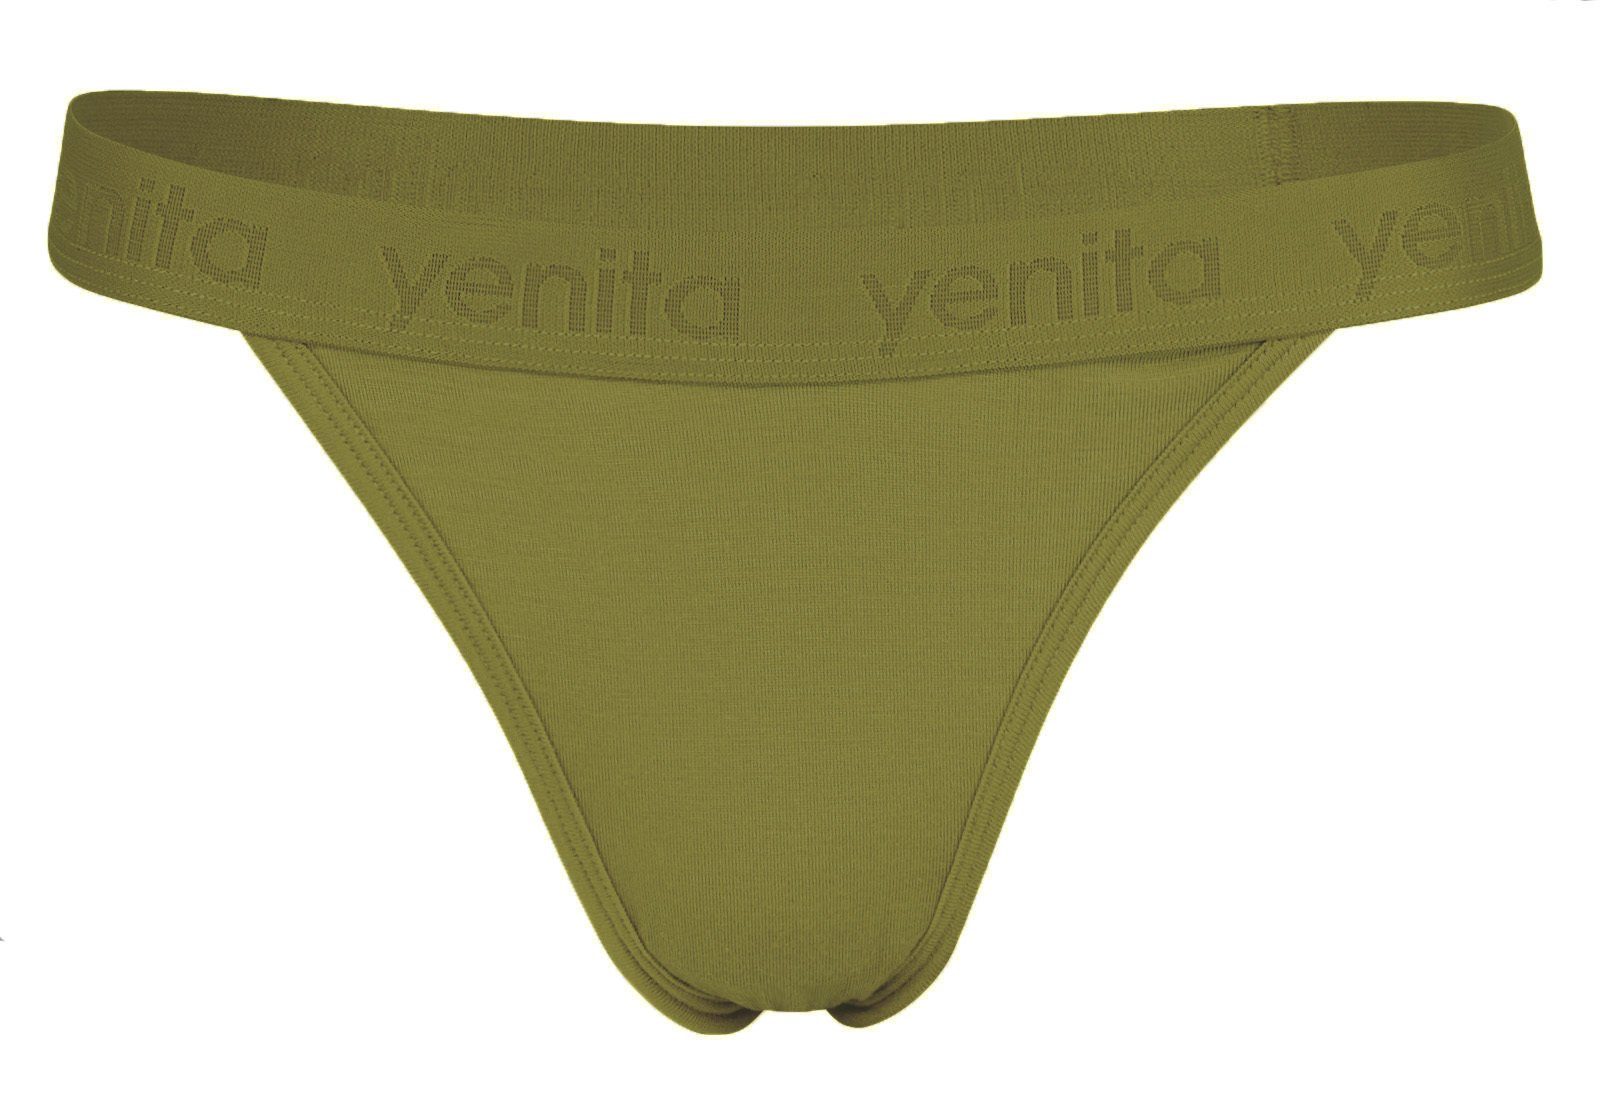 weich Yenita® Olive und String Bambusviskose durch atmungsaktiv